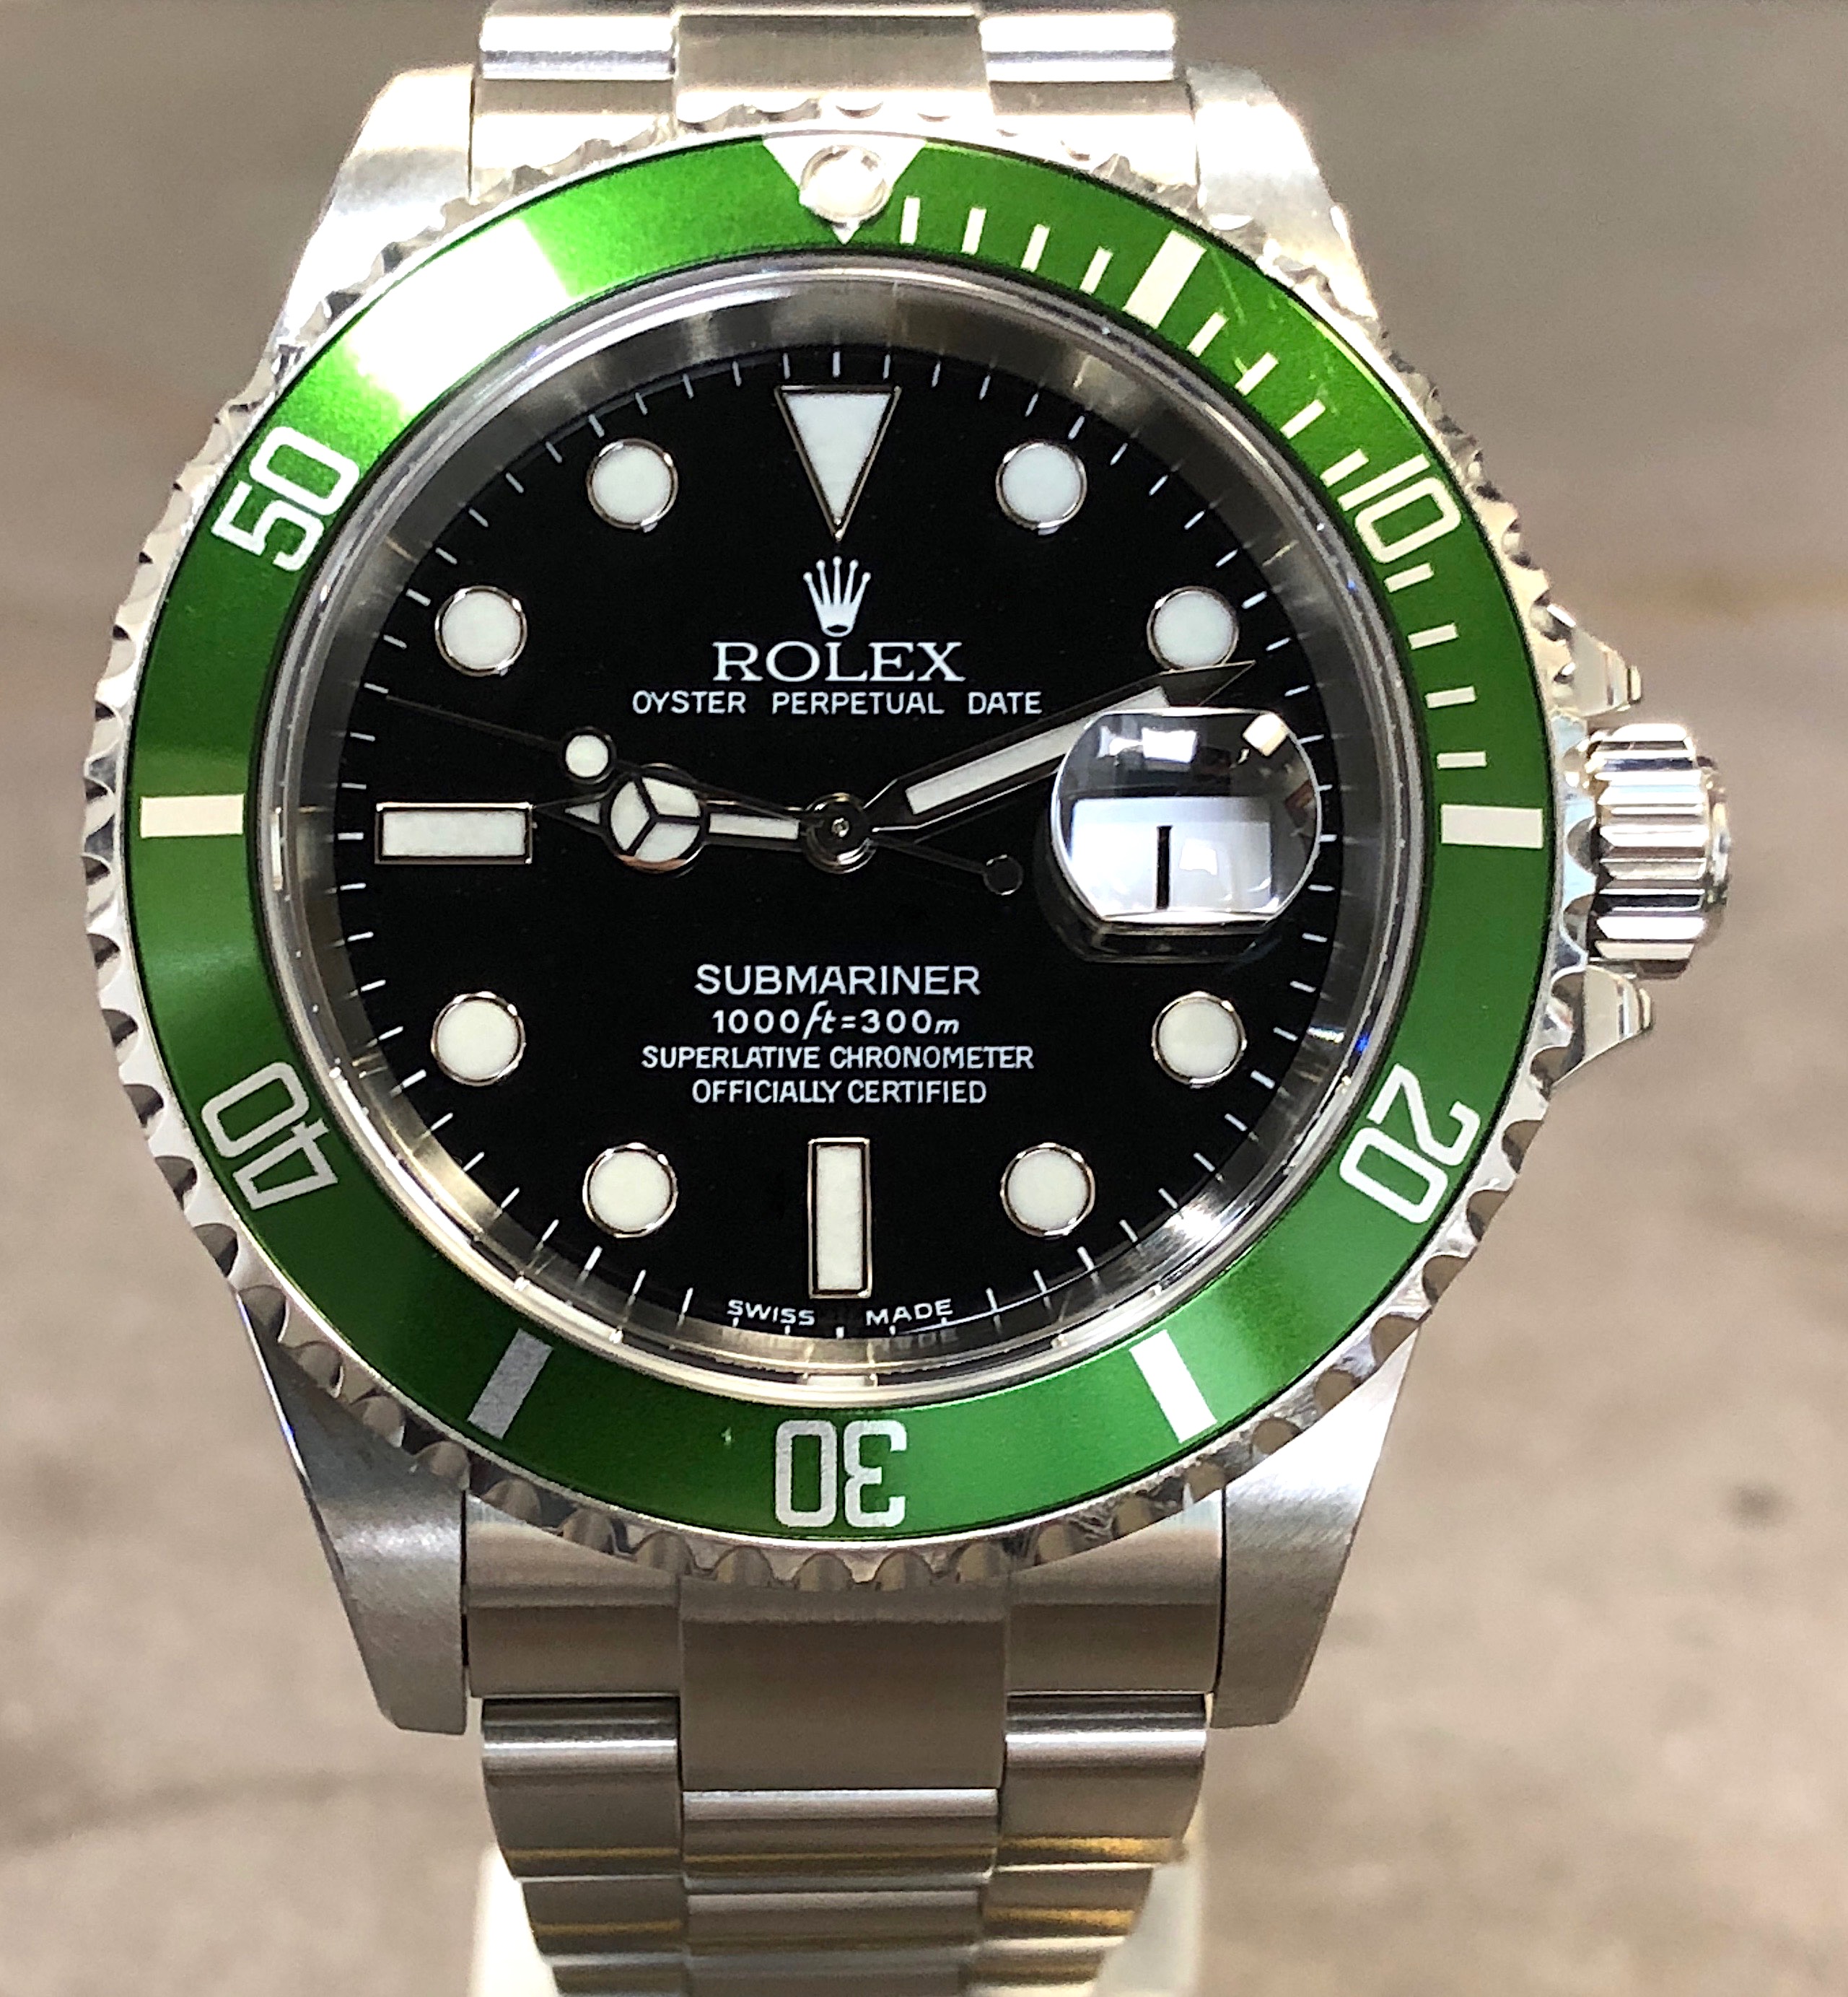 Rolex Submariner Green/Black Anniversary Edition Men's Watch 16610 LV